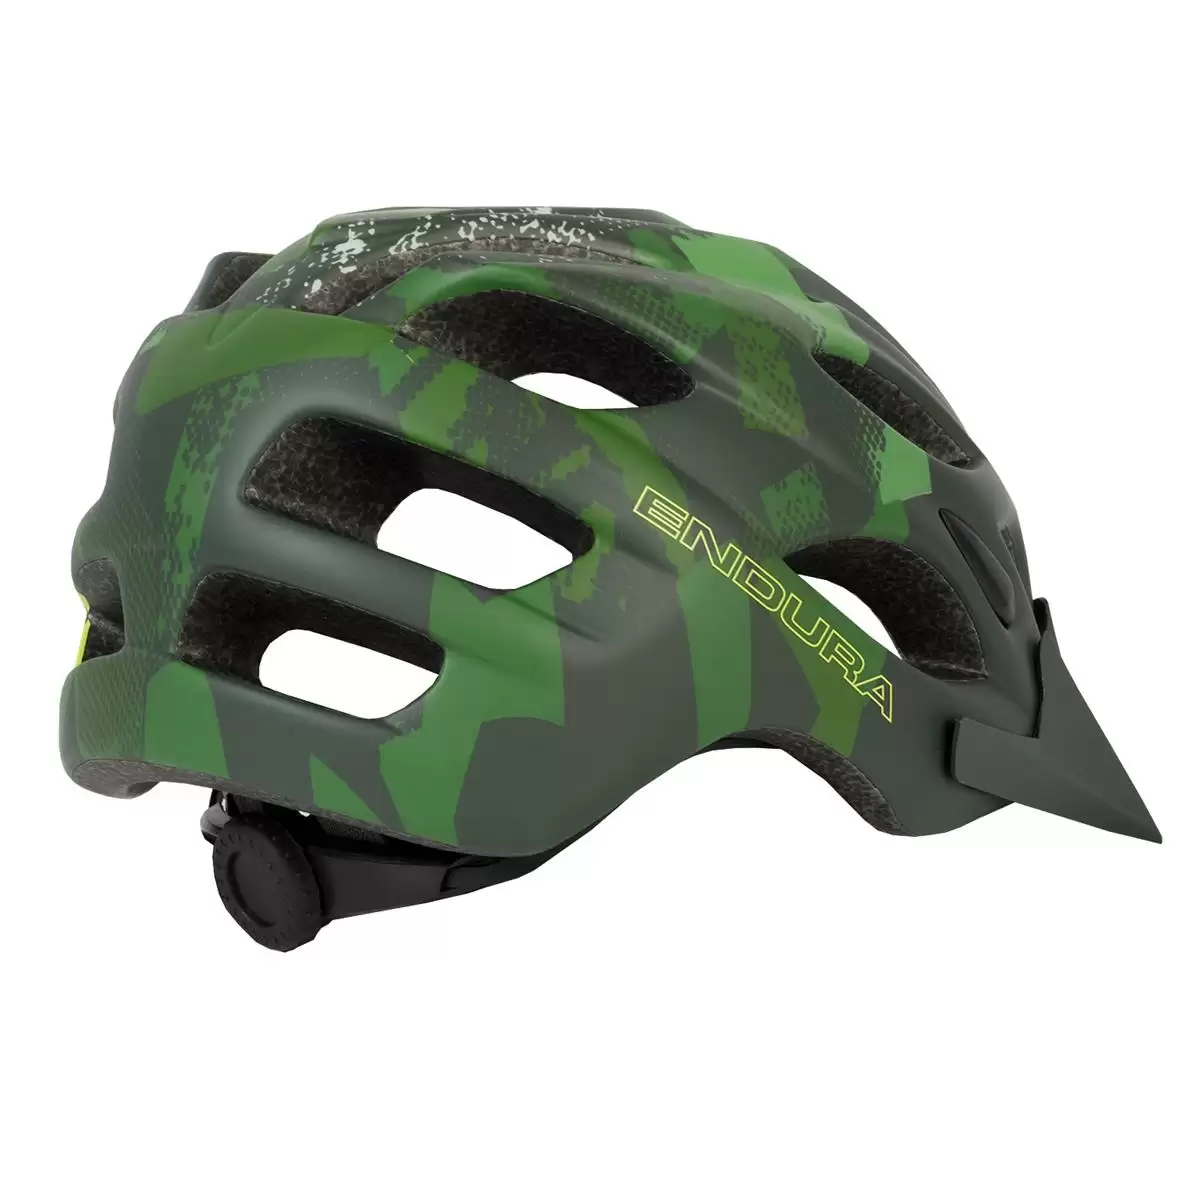 Hummvee helmet Khaki Green size L/XL (58-63cm) #1